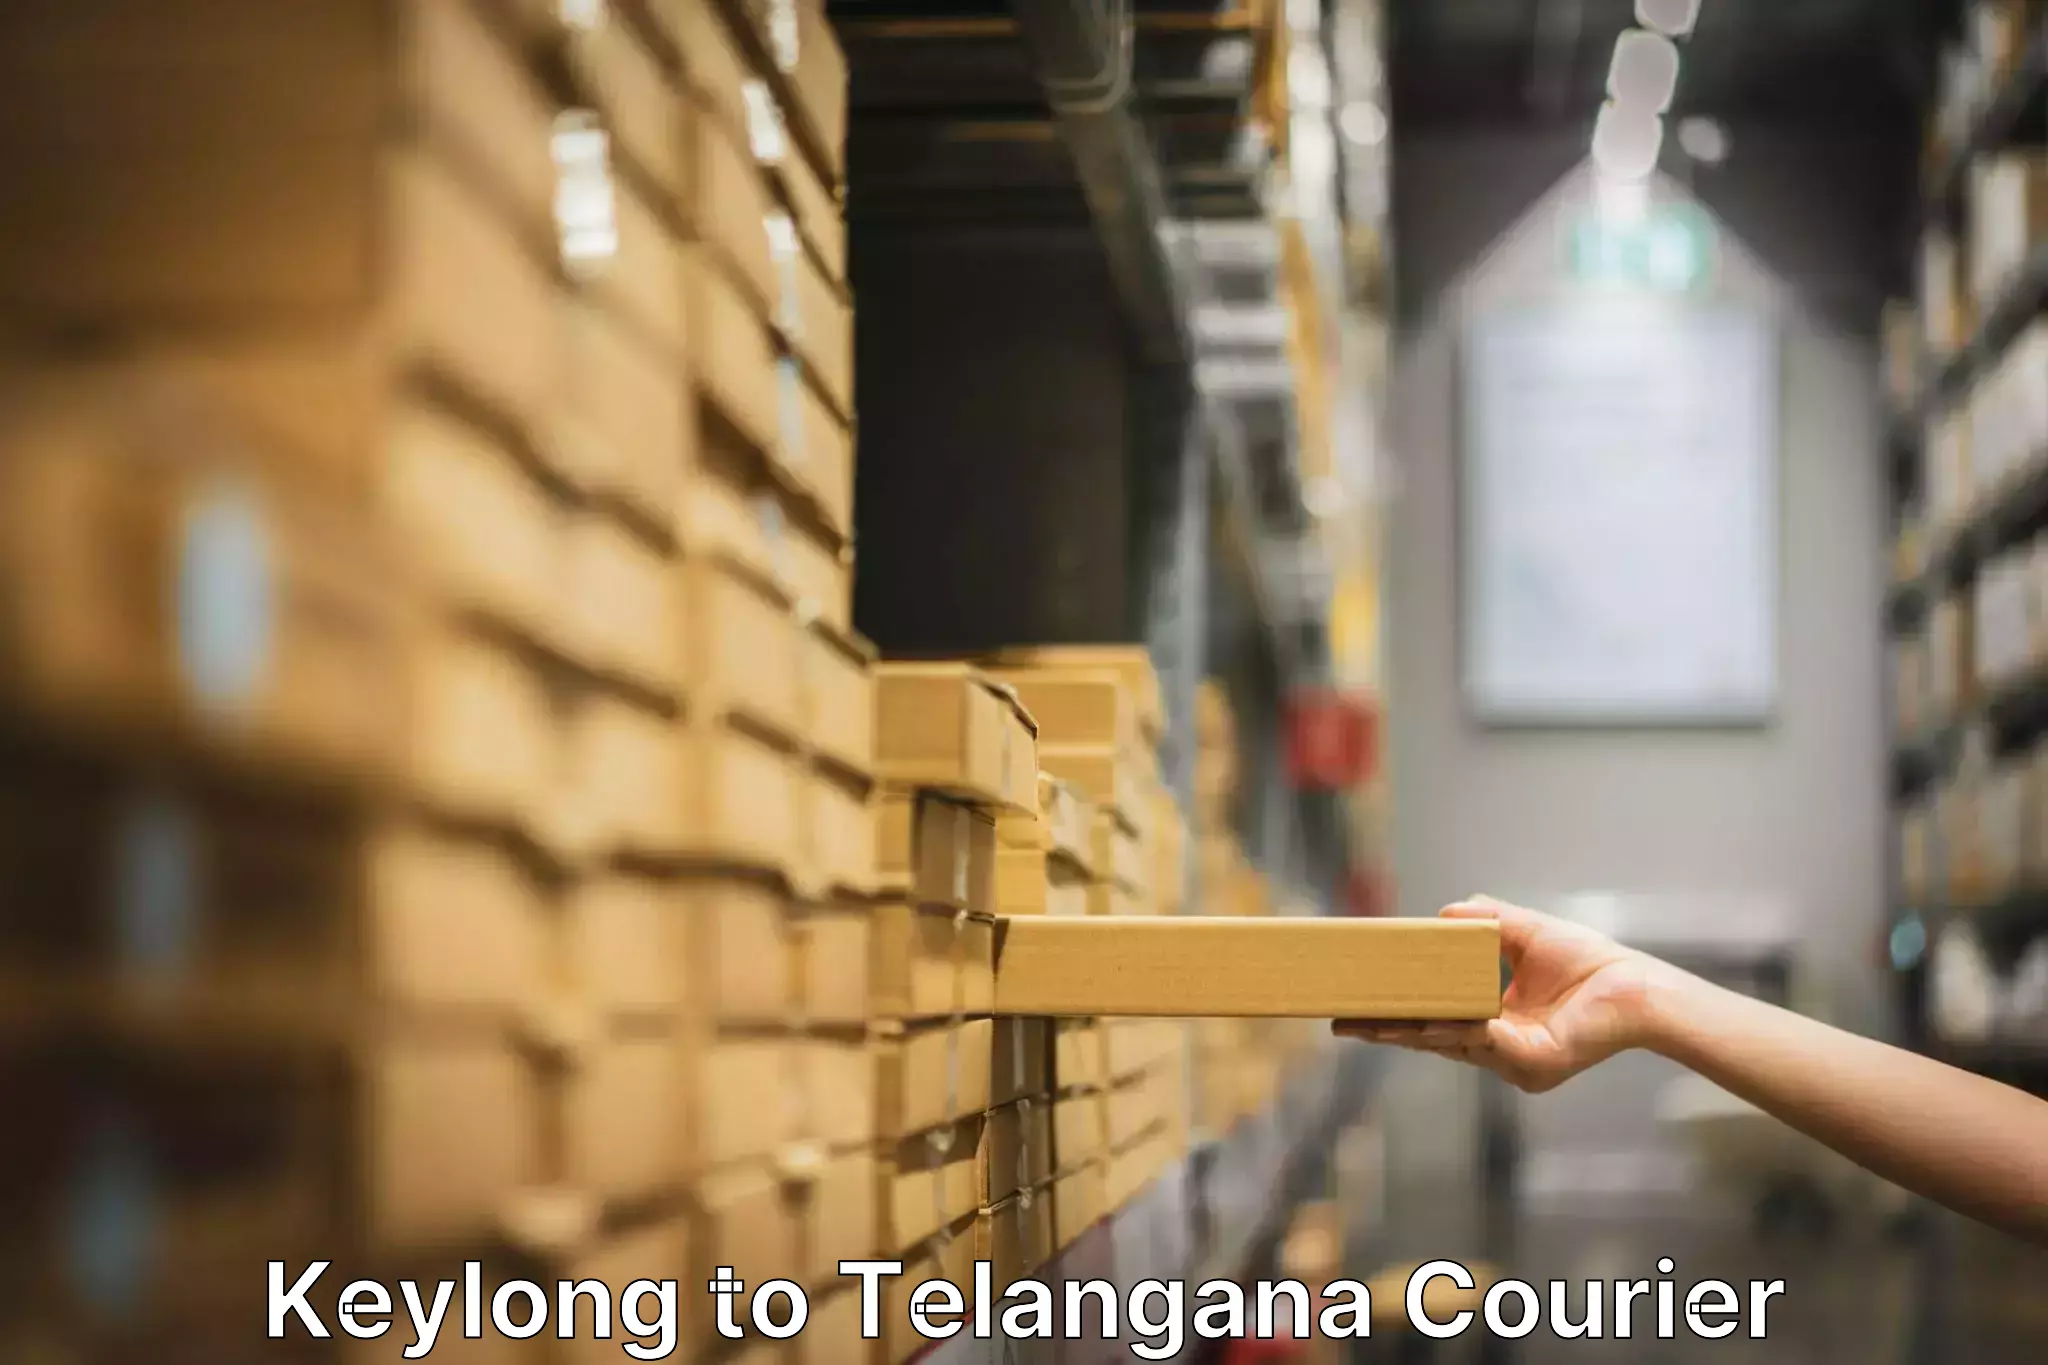 Furniture transport experts Keylong to Telangana